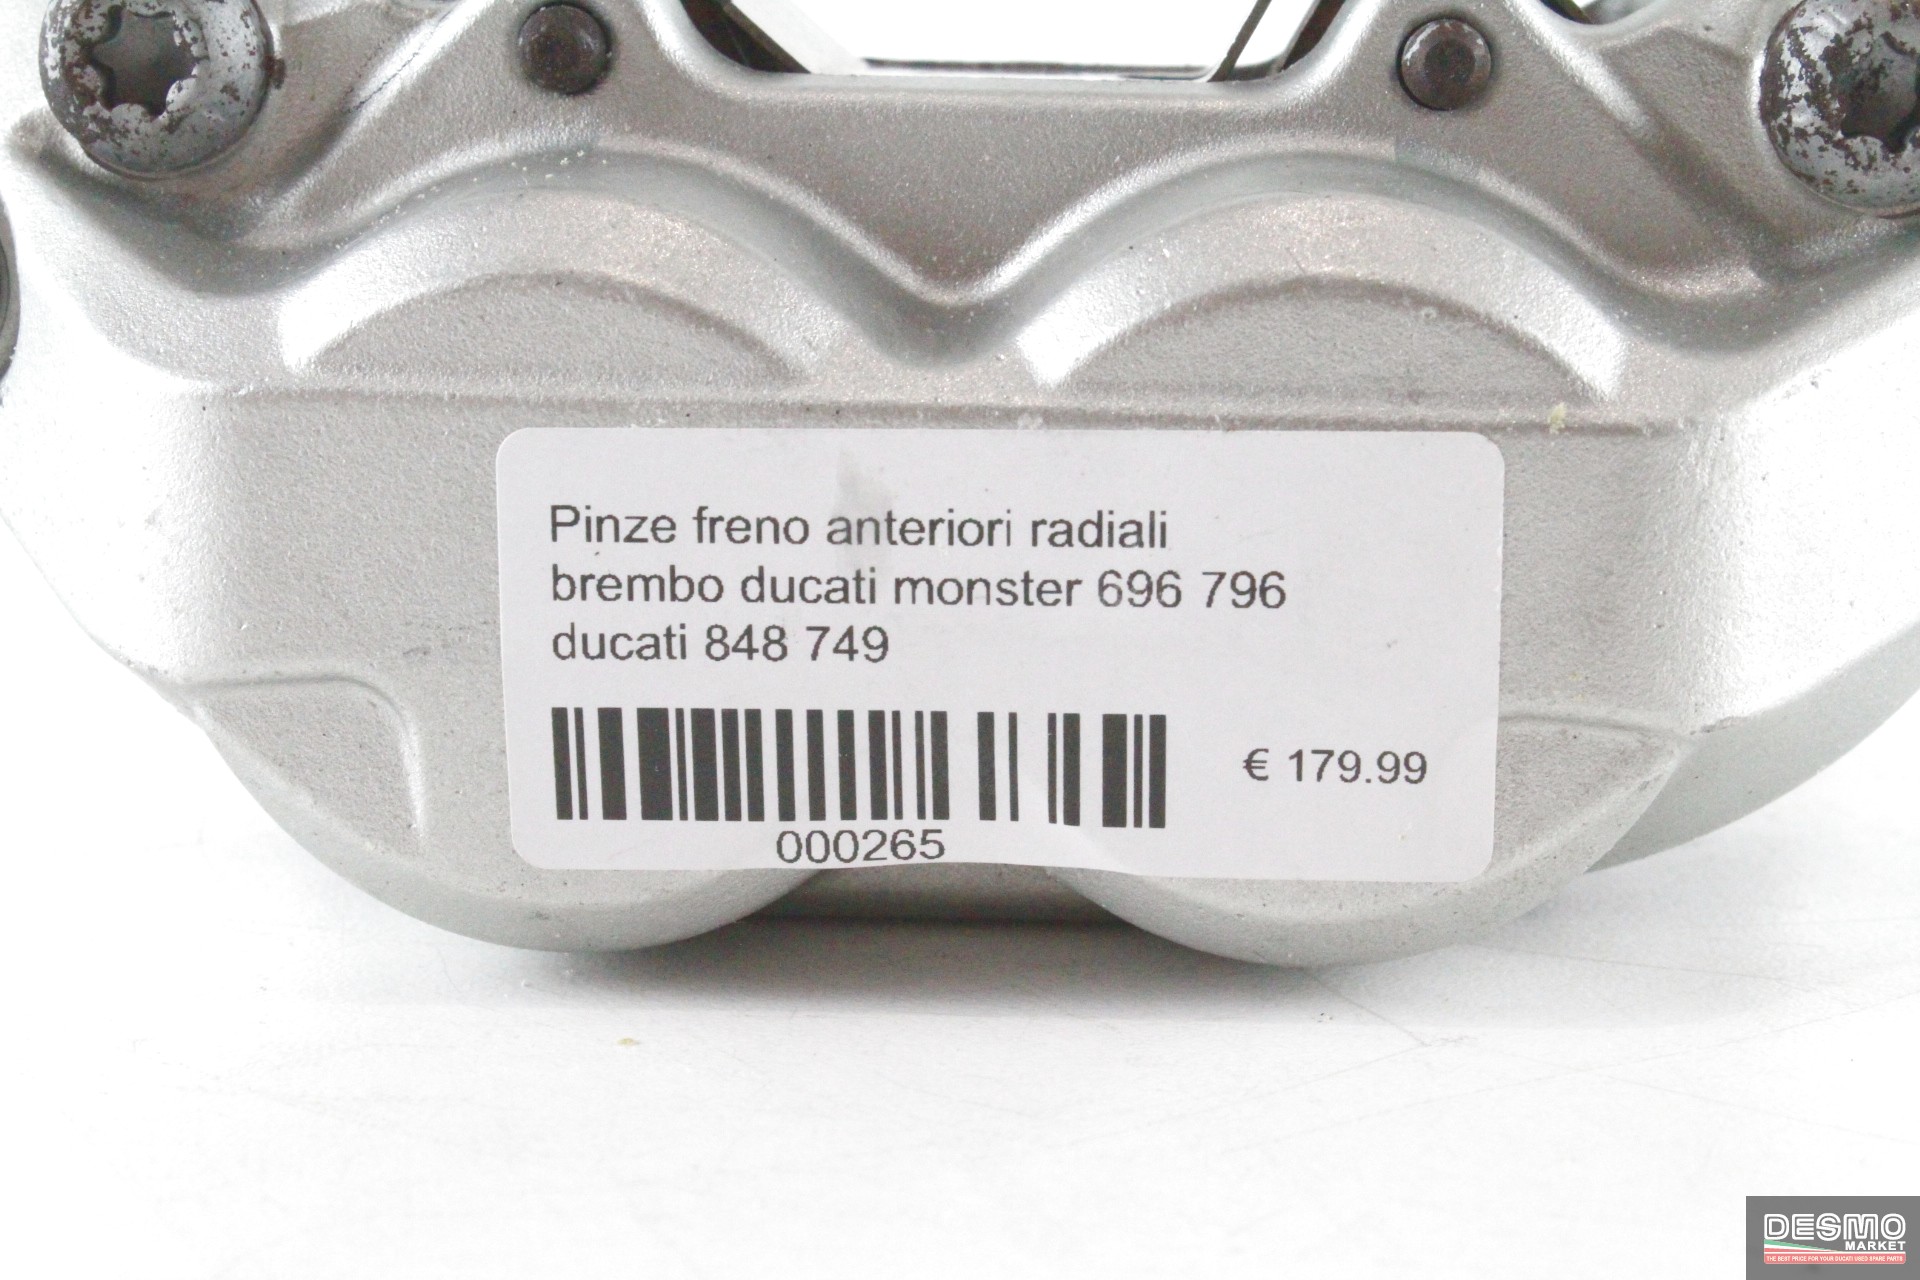 Pinze freno anteriori radiali brembo ducati monster 696 796 ducati 848 749